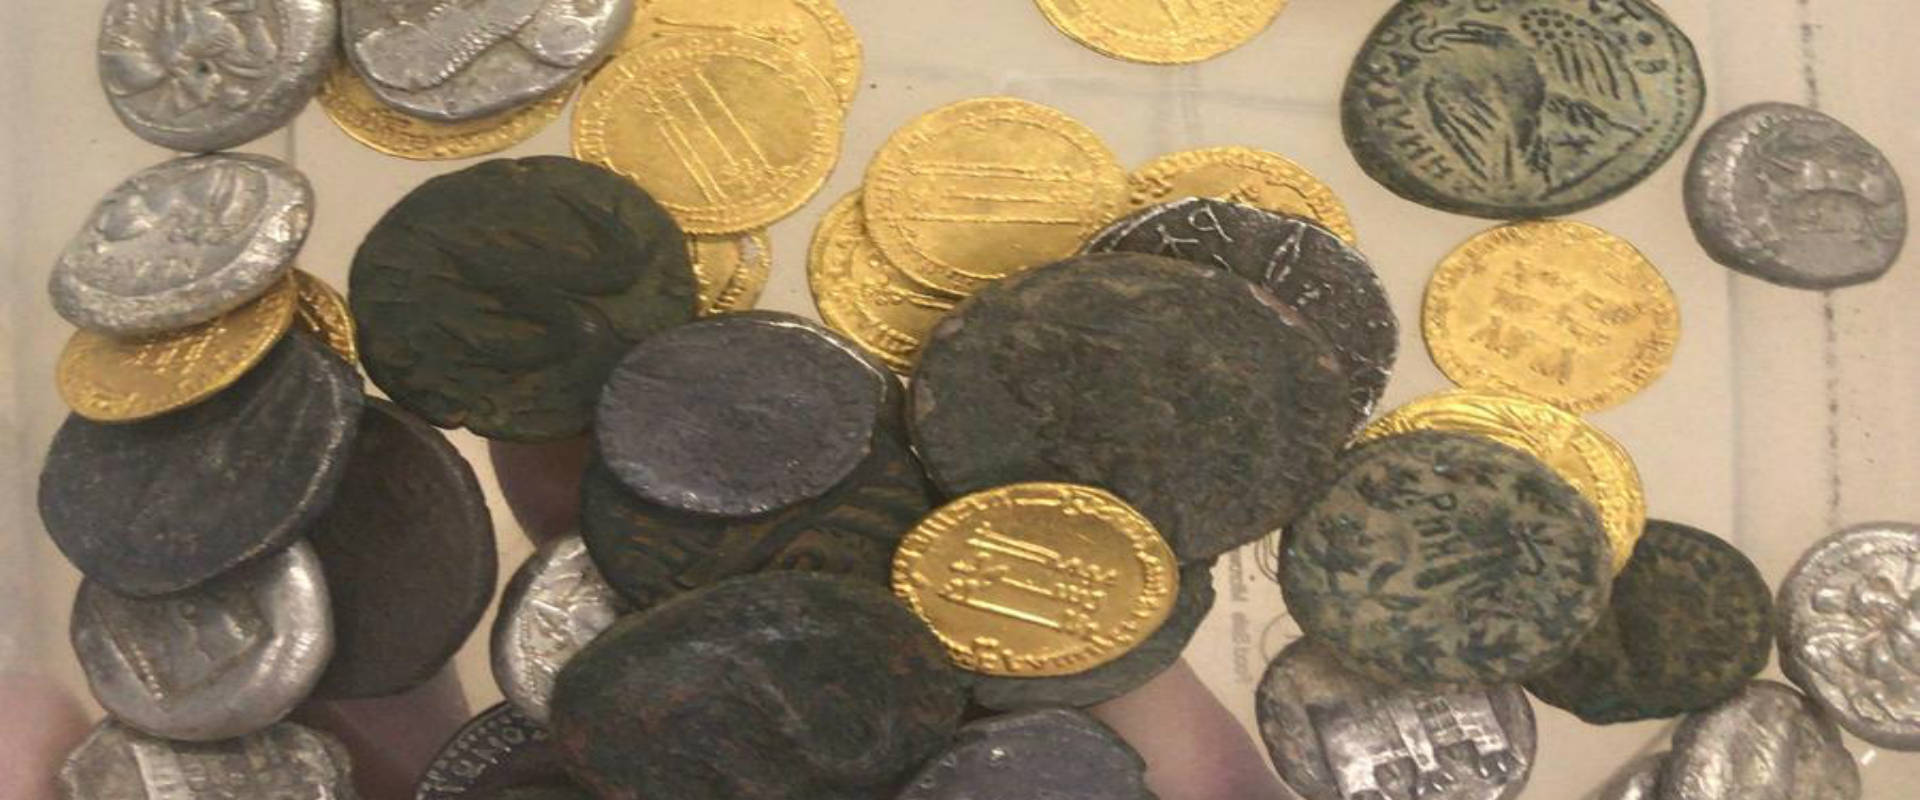 המטבעות העתיקים